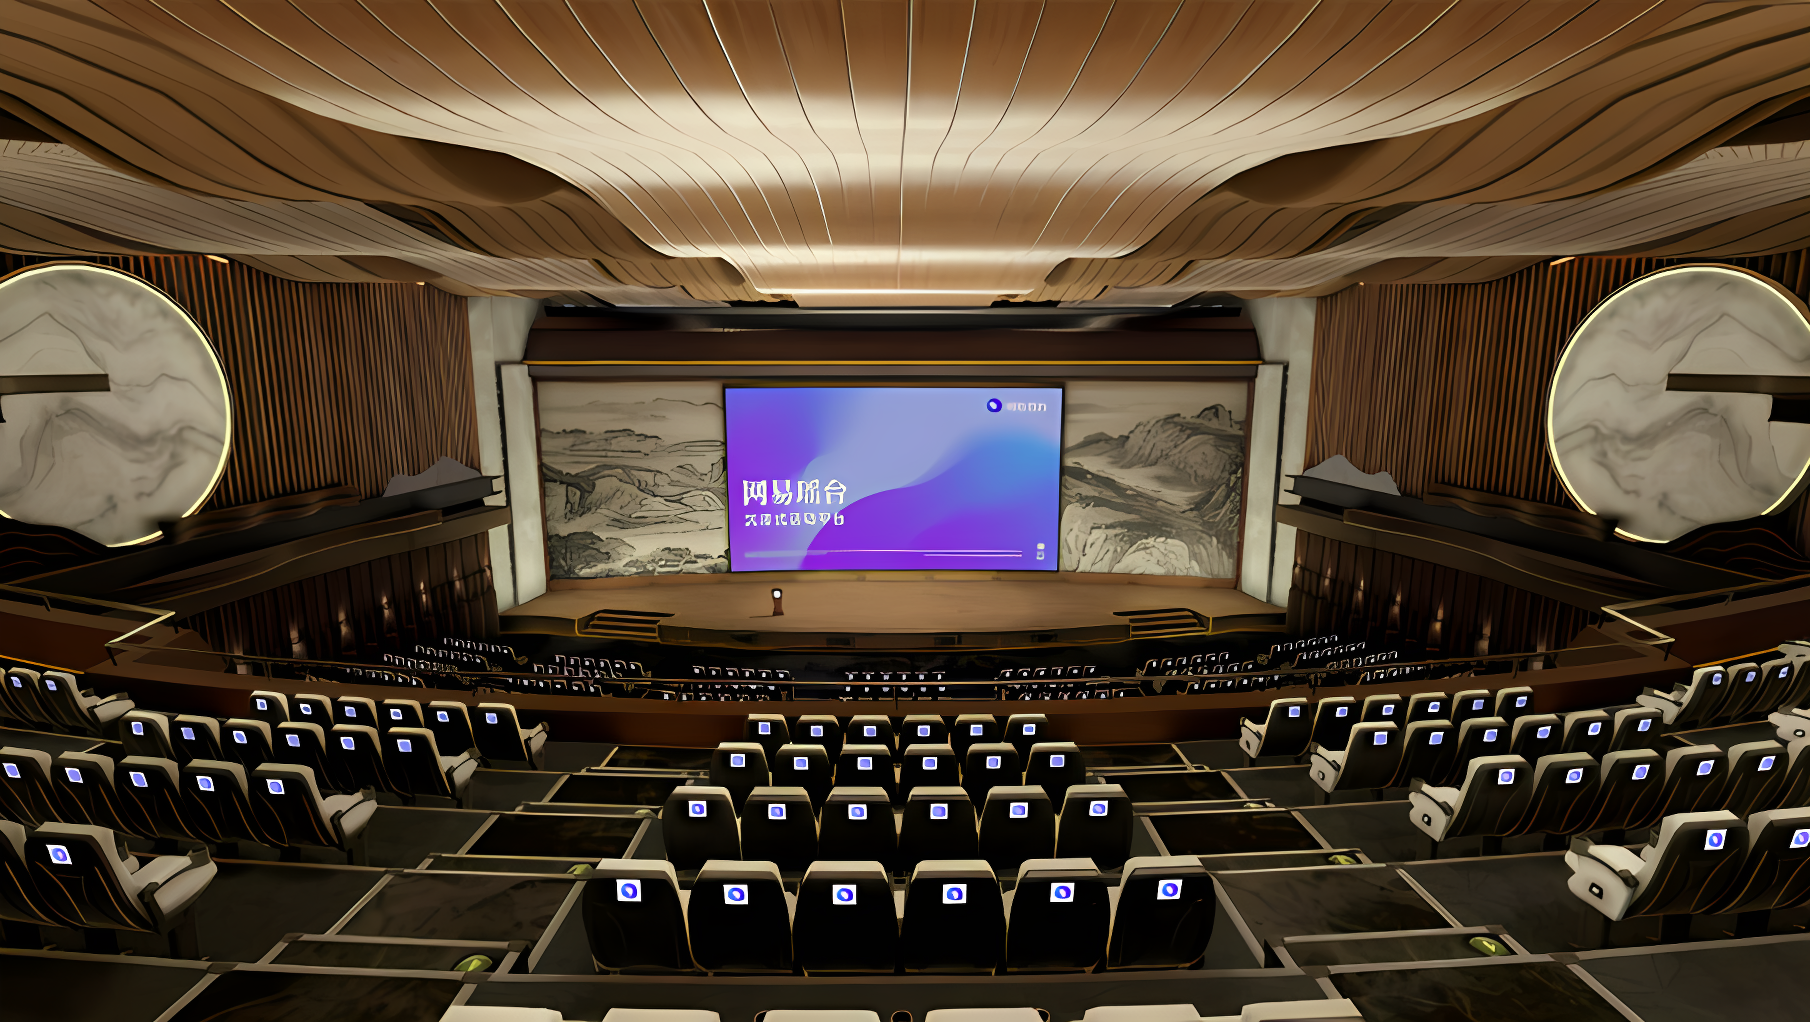 图片展示了一个现代化的会议室，拥有宽敞的座位区，大型屏幕，以及优雅的内饰和照明设计。